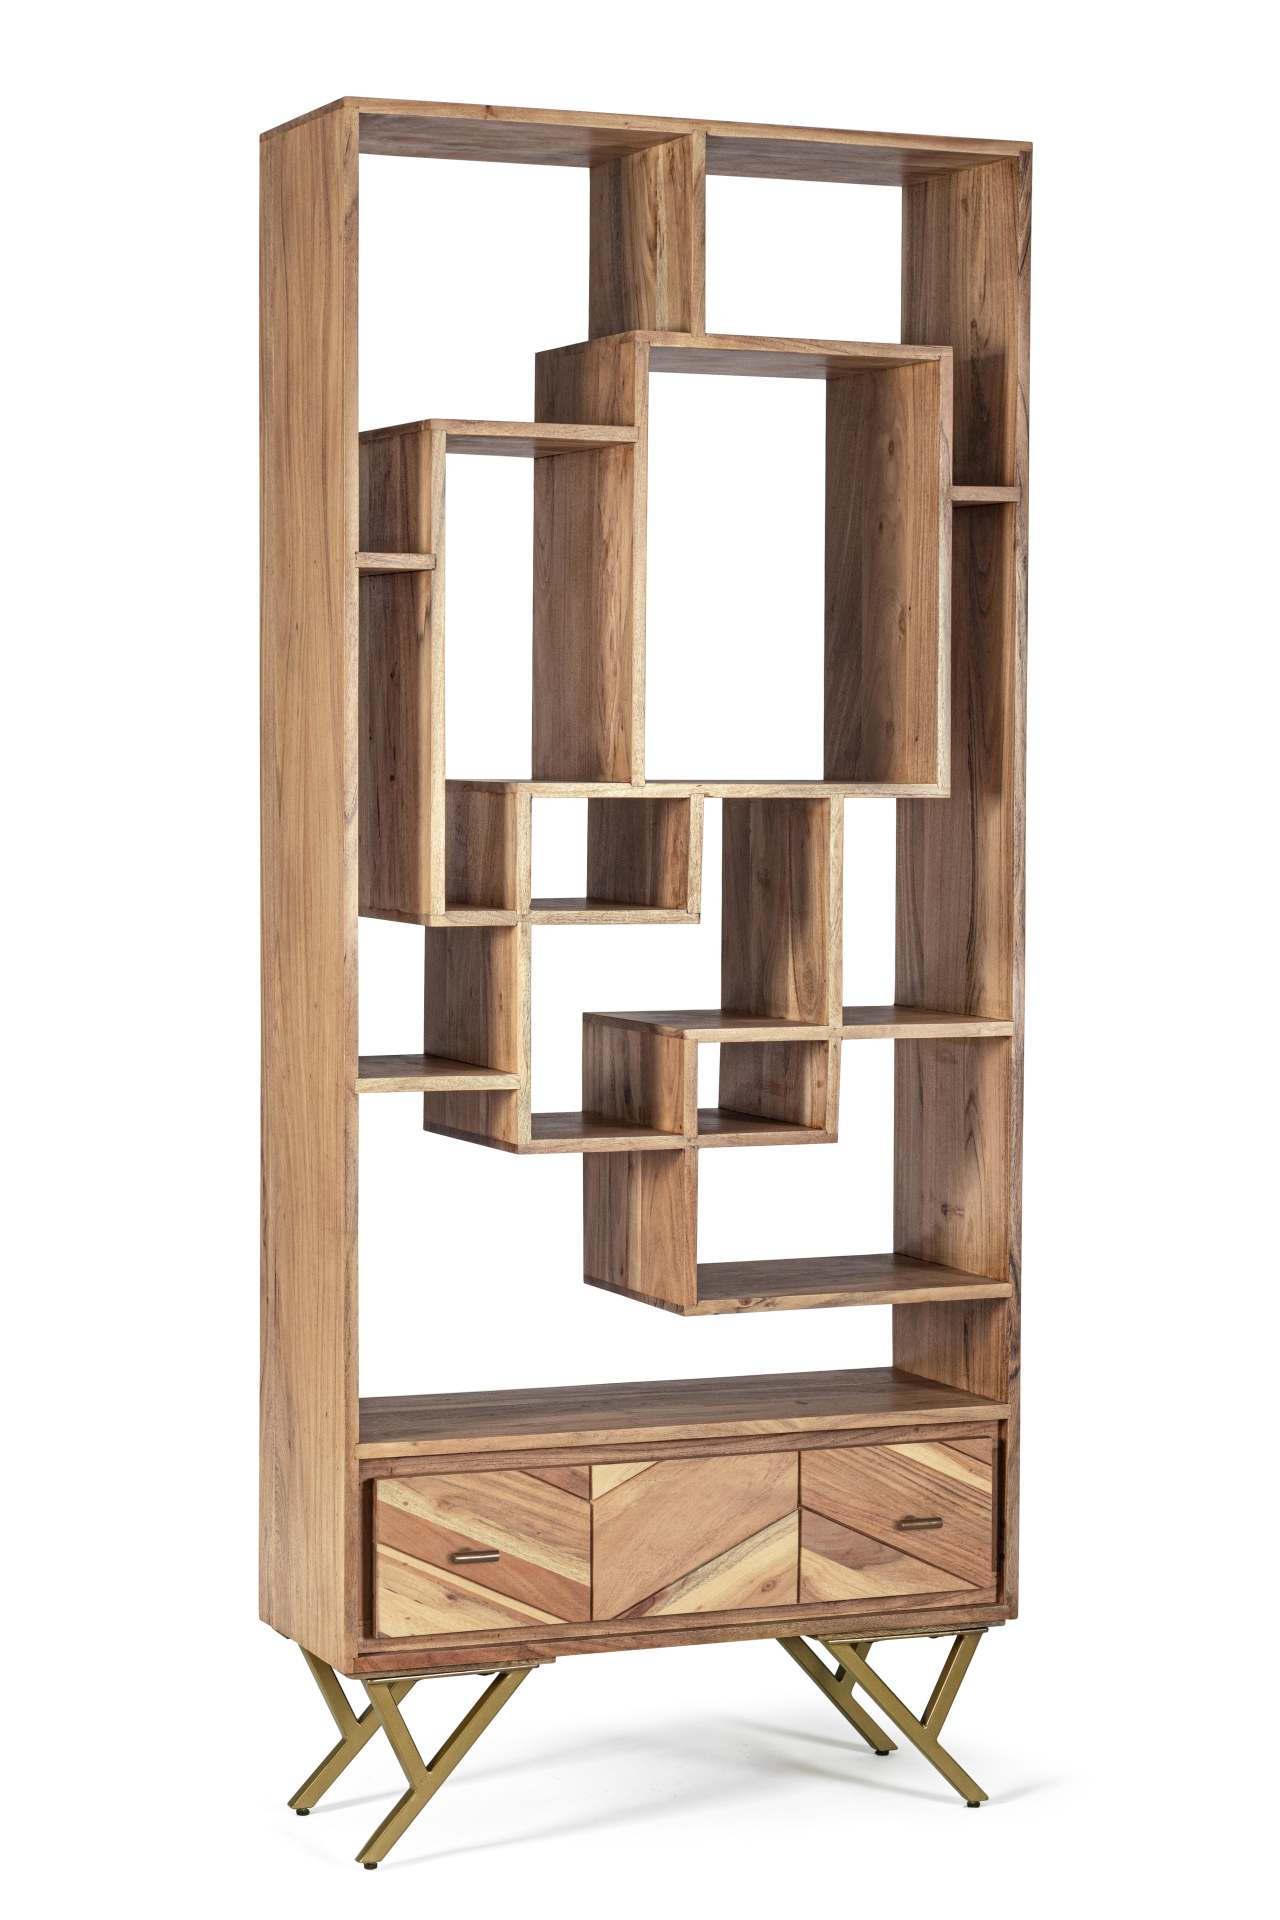 Das Bücherregal Raida überzeugt mit seinem klassischen Design. Gefertigt wurde es aus Mangoholz, welches einen natürlichen Farbton besitzt. Das Gestell ist aus Metall und hat eine goldene Farbe. Das Bücherregal verfügt über eine Schublade und sieben Fäche